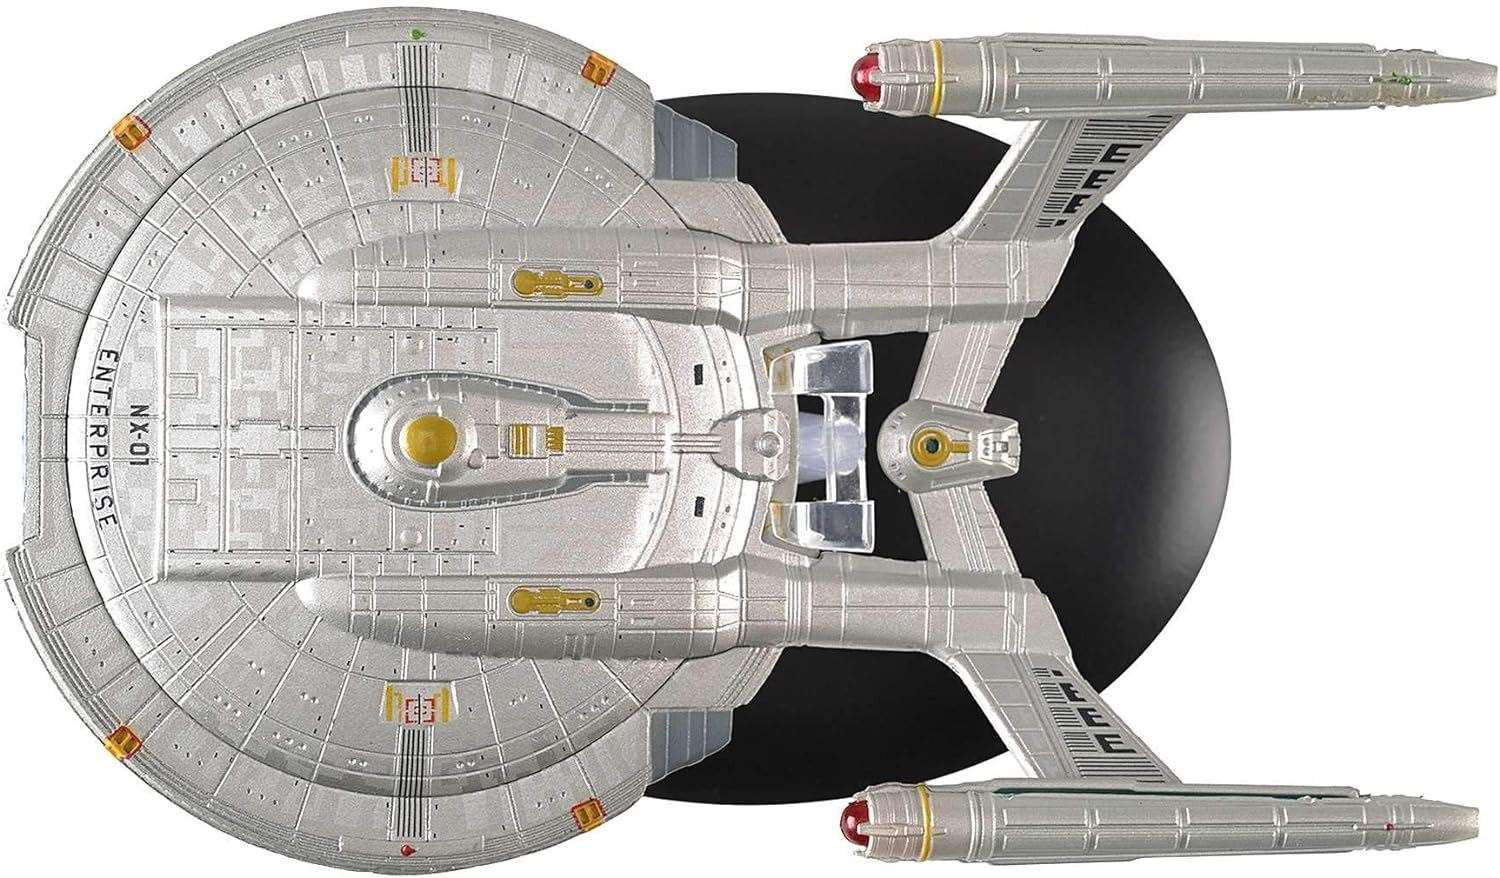 #04 Enterprise NX-01 Die-cast Model Ship (Eaglemoss / Star Trek)